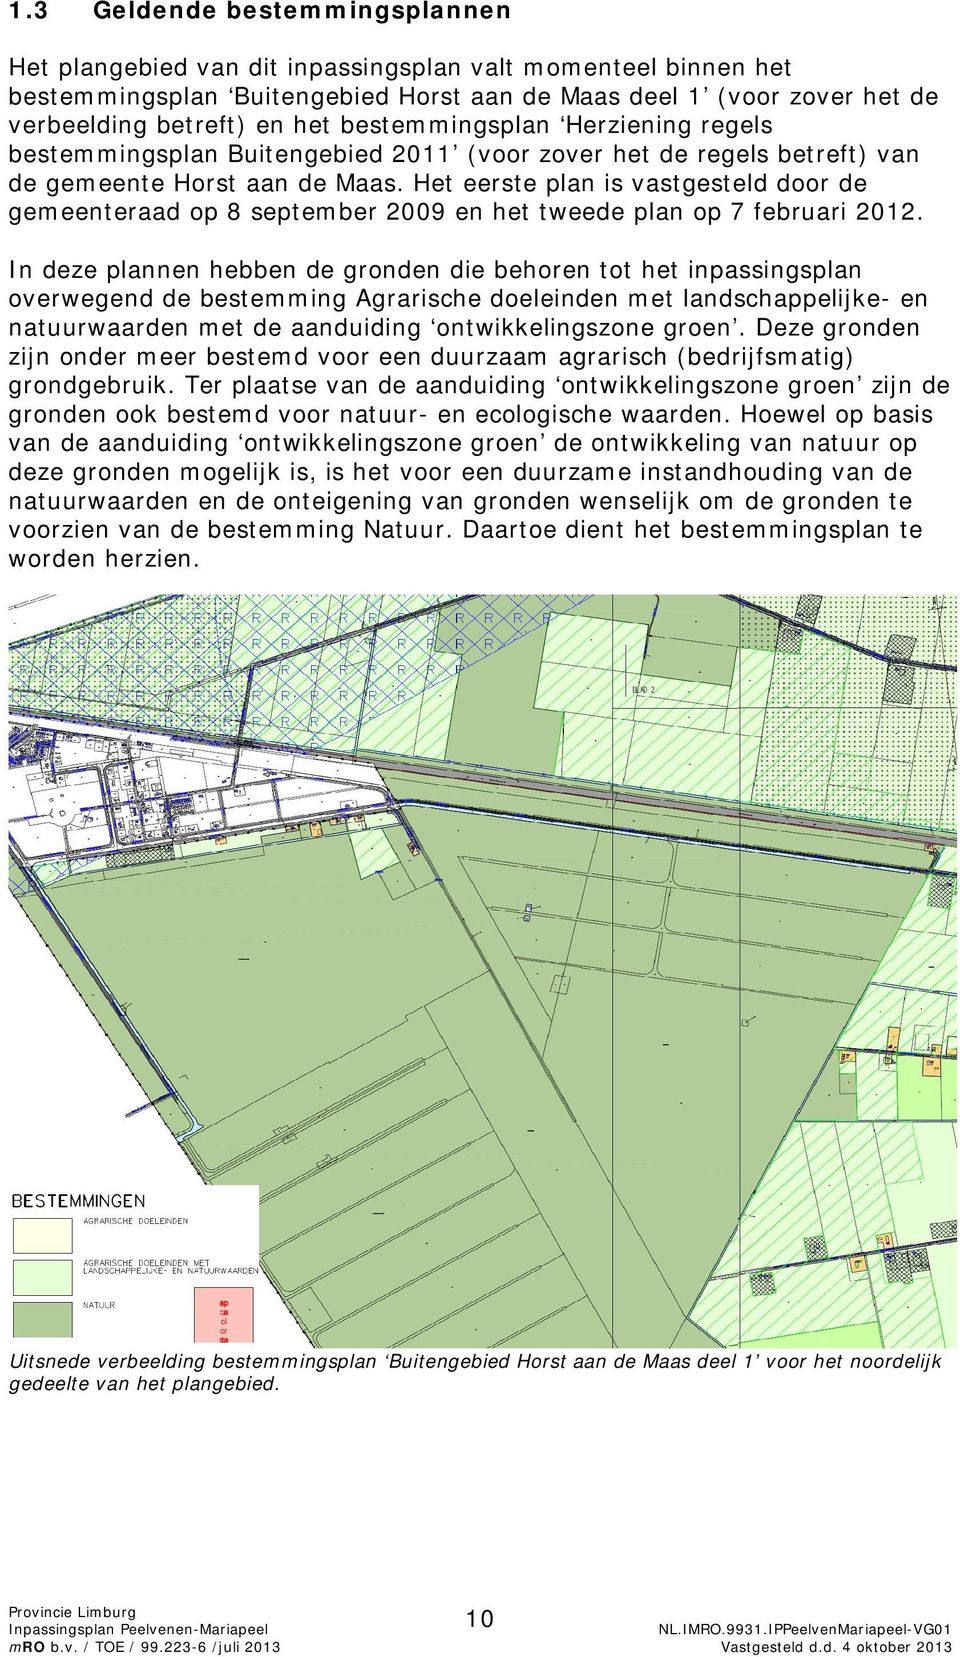 Het eerste plan is vastgesteld door de gemeenteraad op 8 september 2009 en het tweede plan op 7 februari 2012.